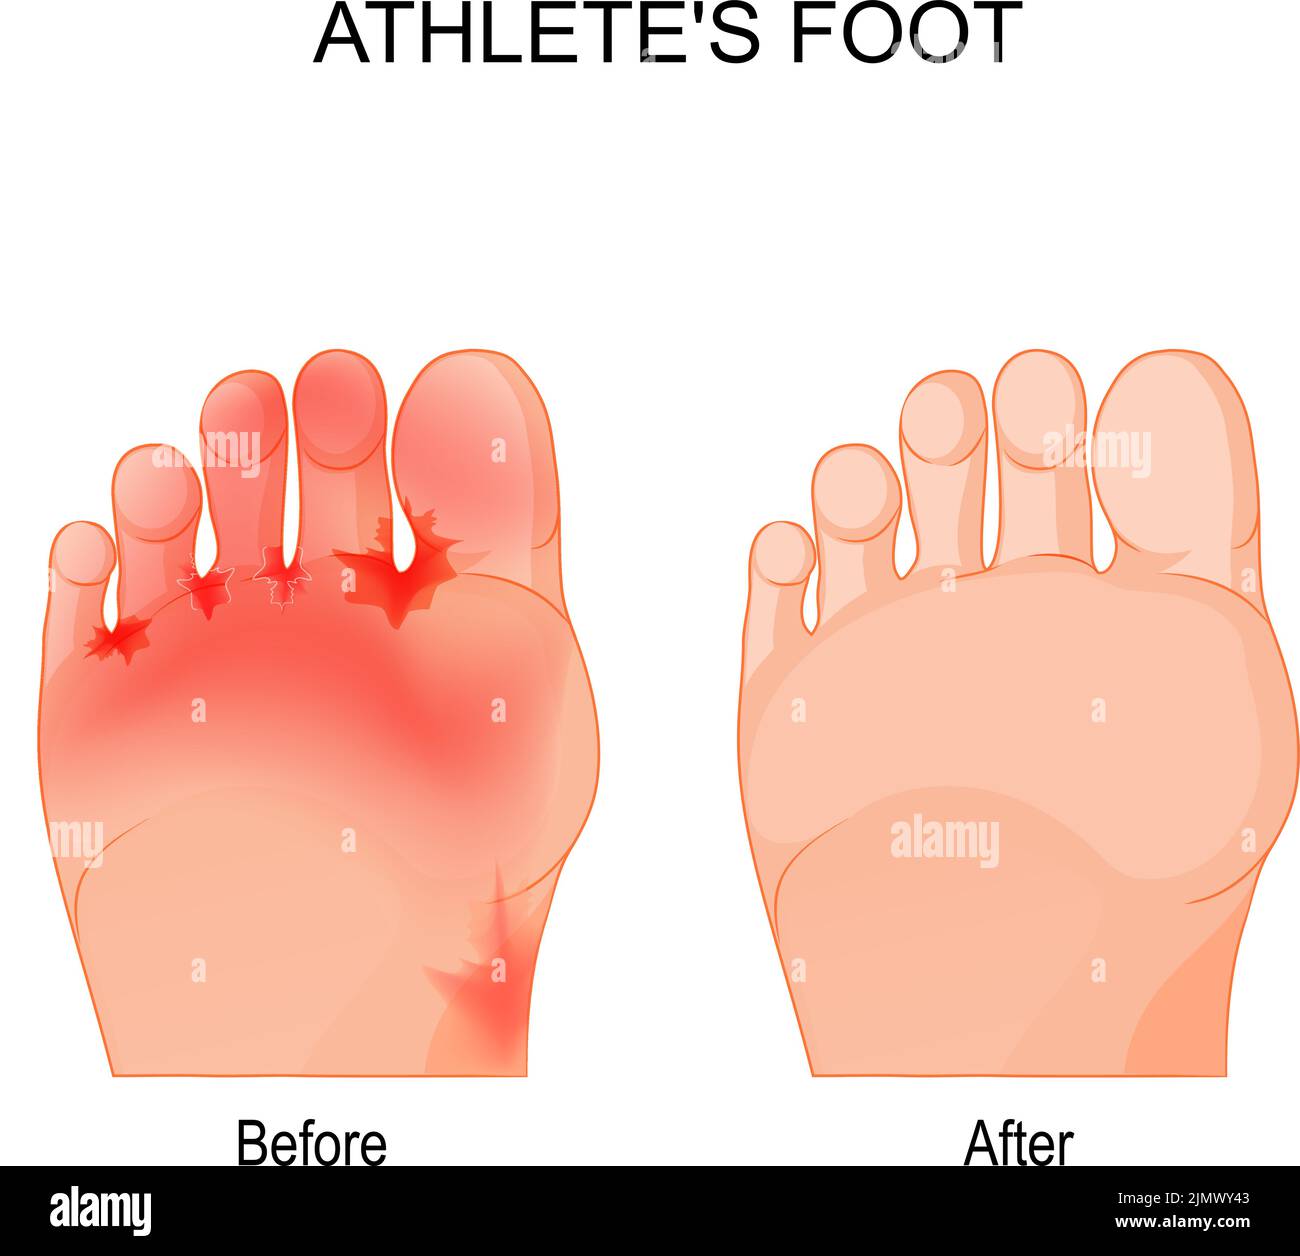 El pie de atleta es una infección micótica que afecta los pies. Comparación y diferencia. Pies humanos antes y después de la terapia. Póster vectorial Ilustración del Vector